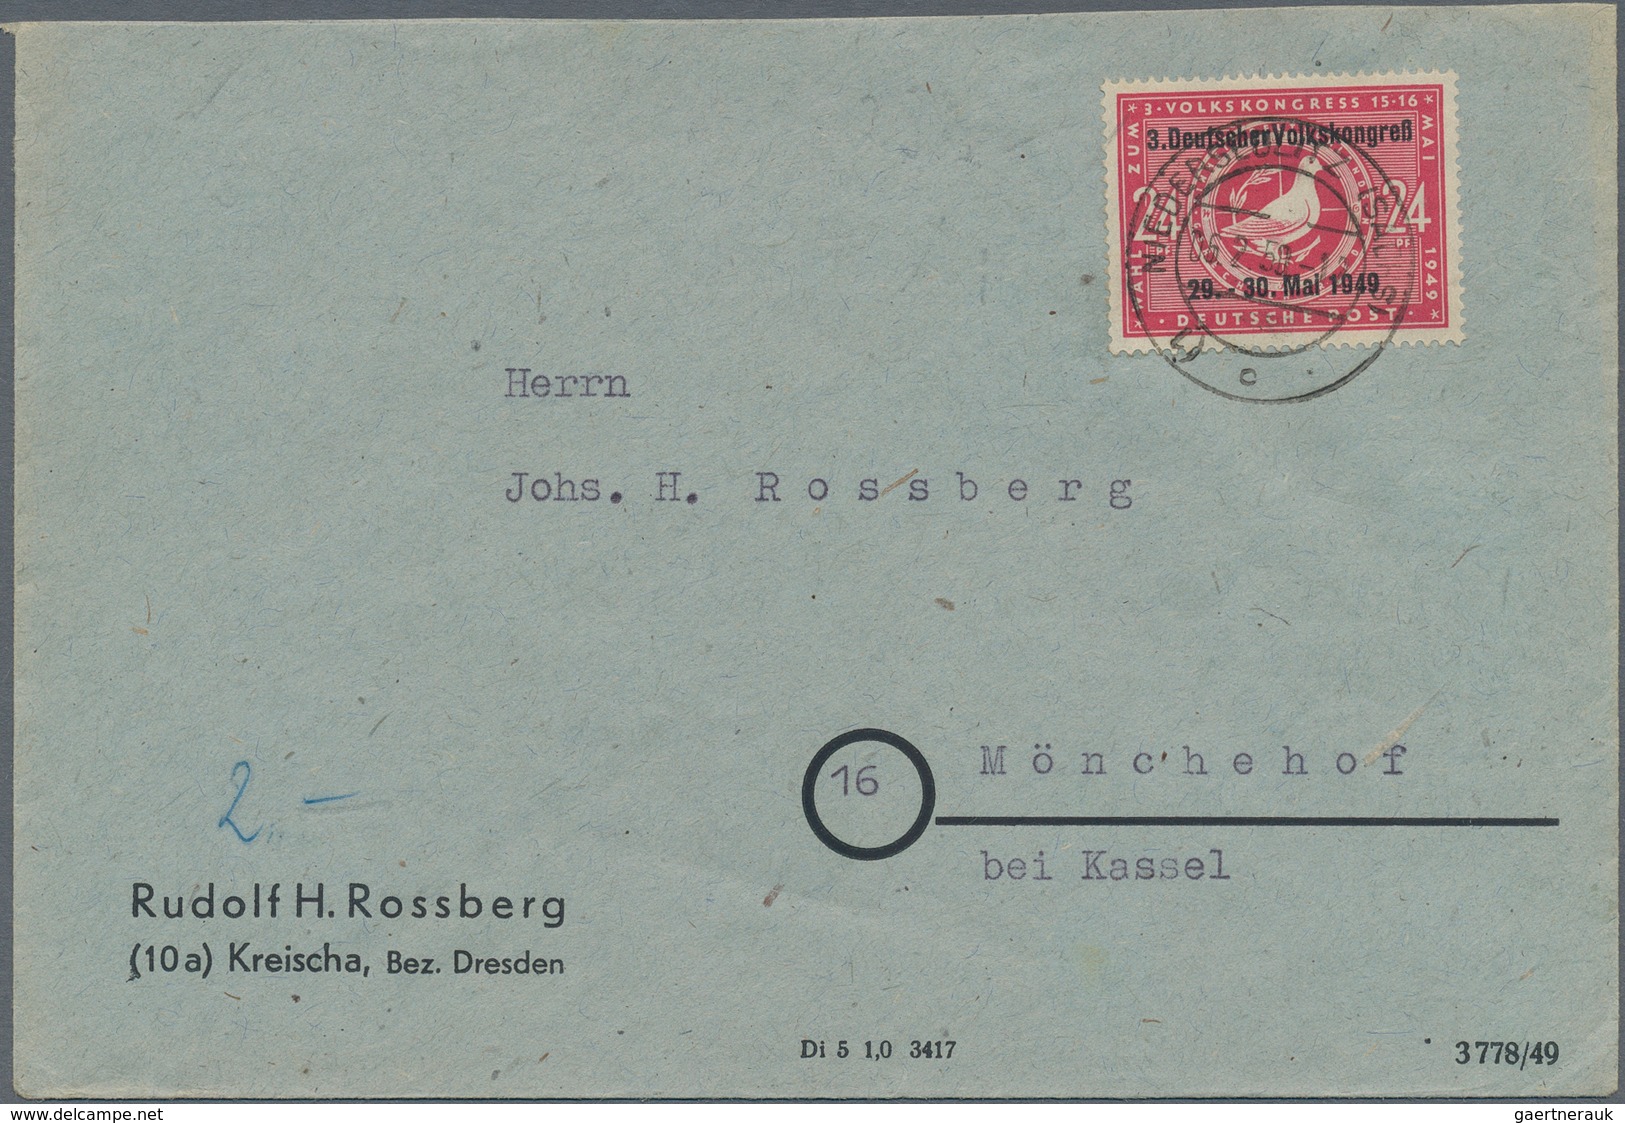 Sowjetische Zone: 1945/1950, sehr vielseitiger und ergiebiger Posten von ca. 380 Briefen und Karten,